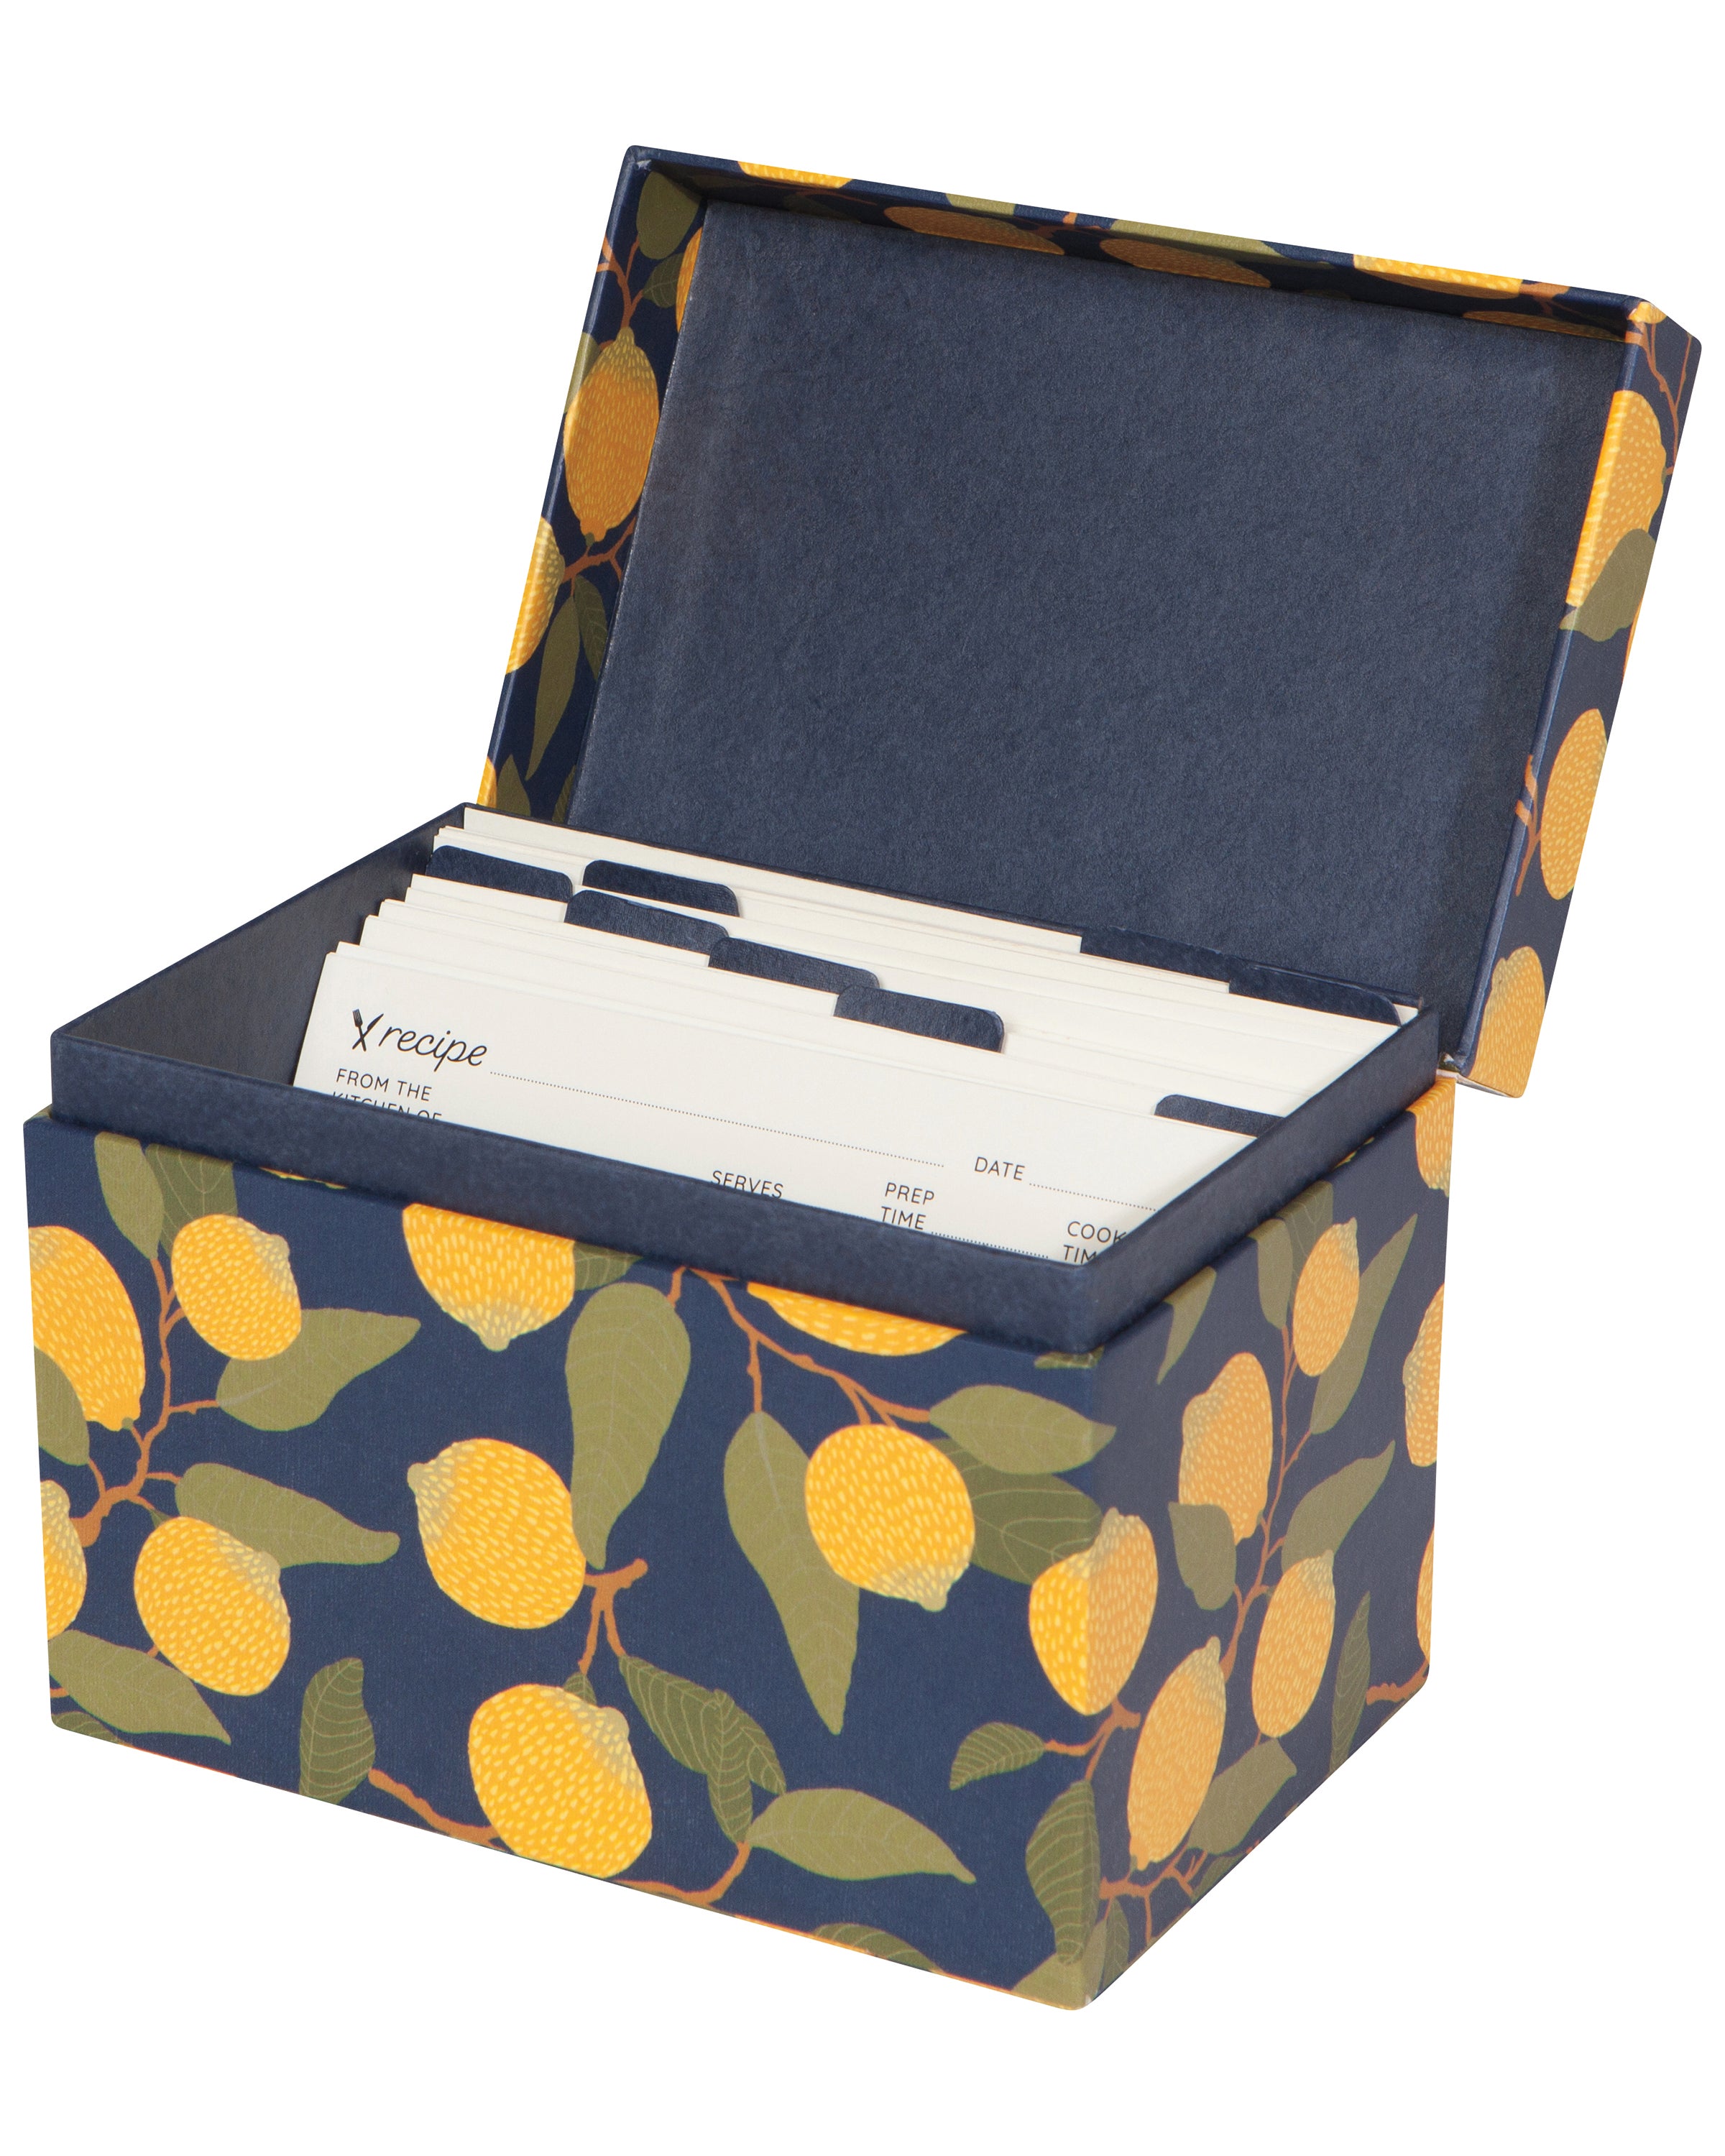 Danica Designs Recipe Card Box in Lemons